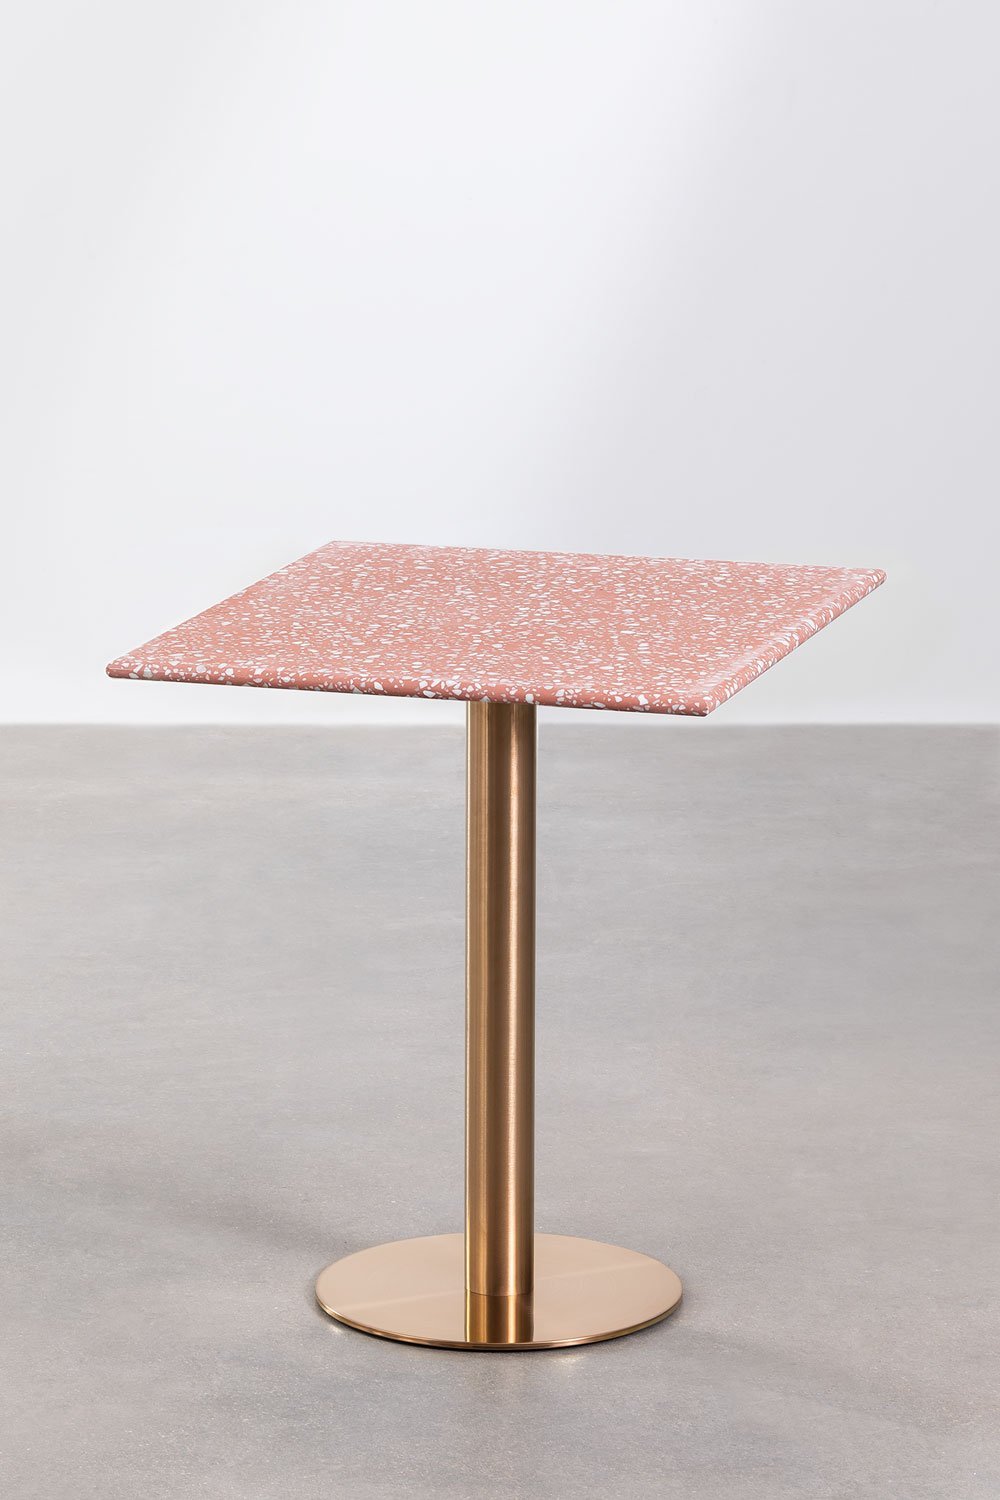 Kwadratowy stół barowy z lastryko (60x60 cm) Malibu, obrazek w galerii 1